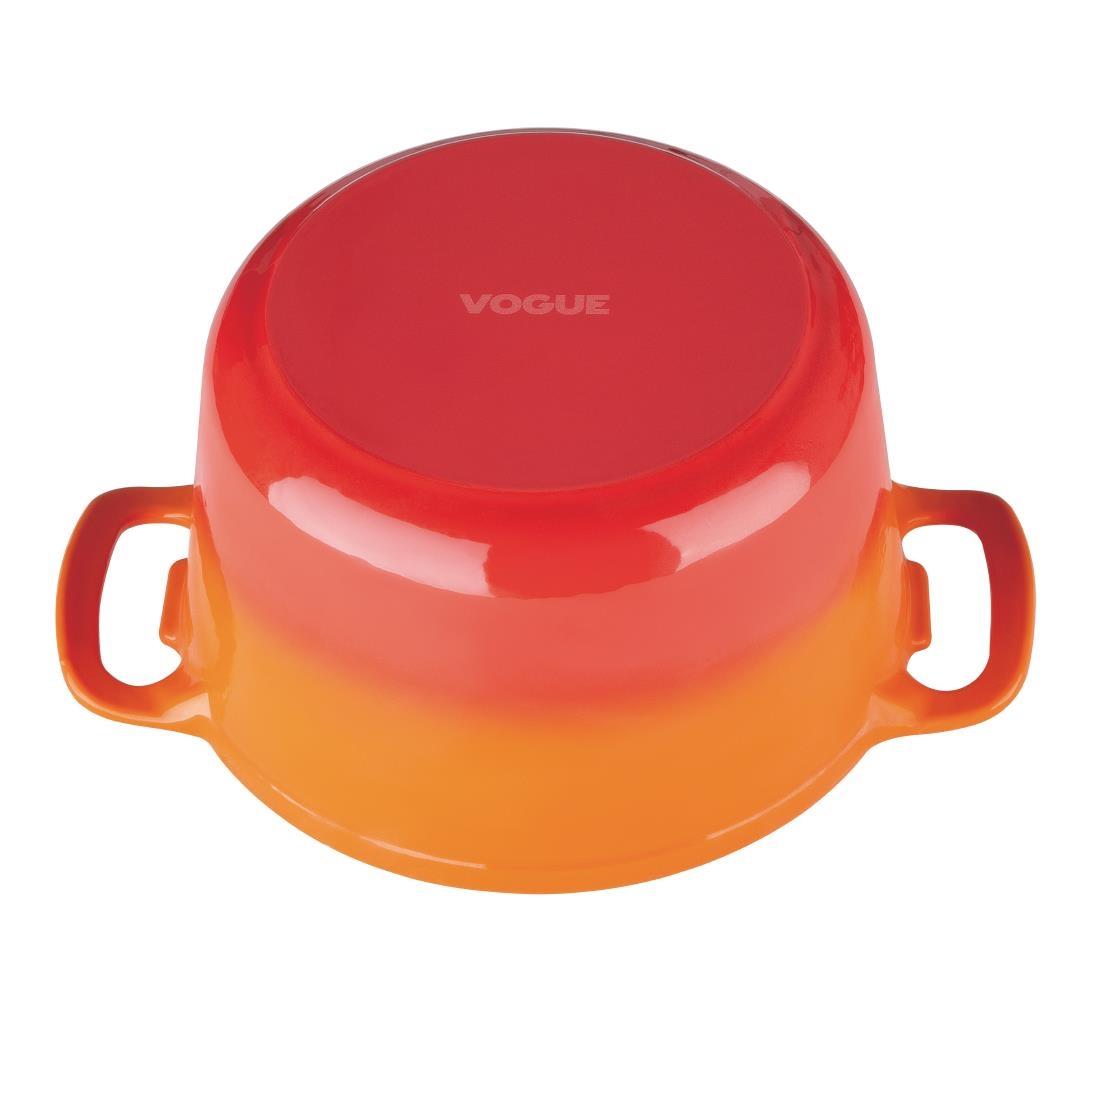 Vogue Orange Round Casserole Dish 4Ltr - GH303  - 6